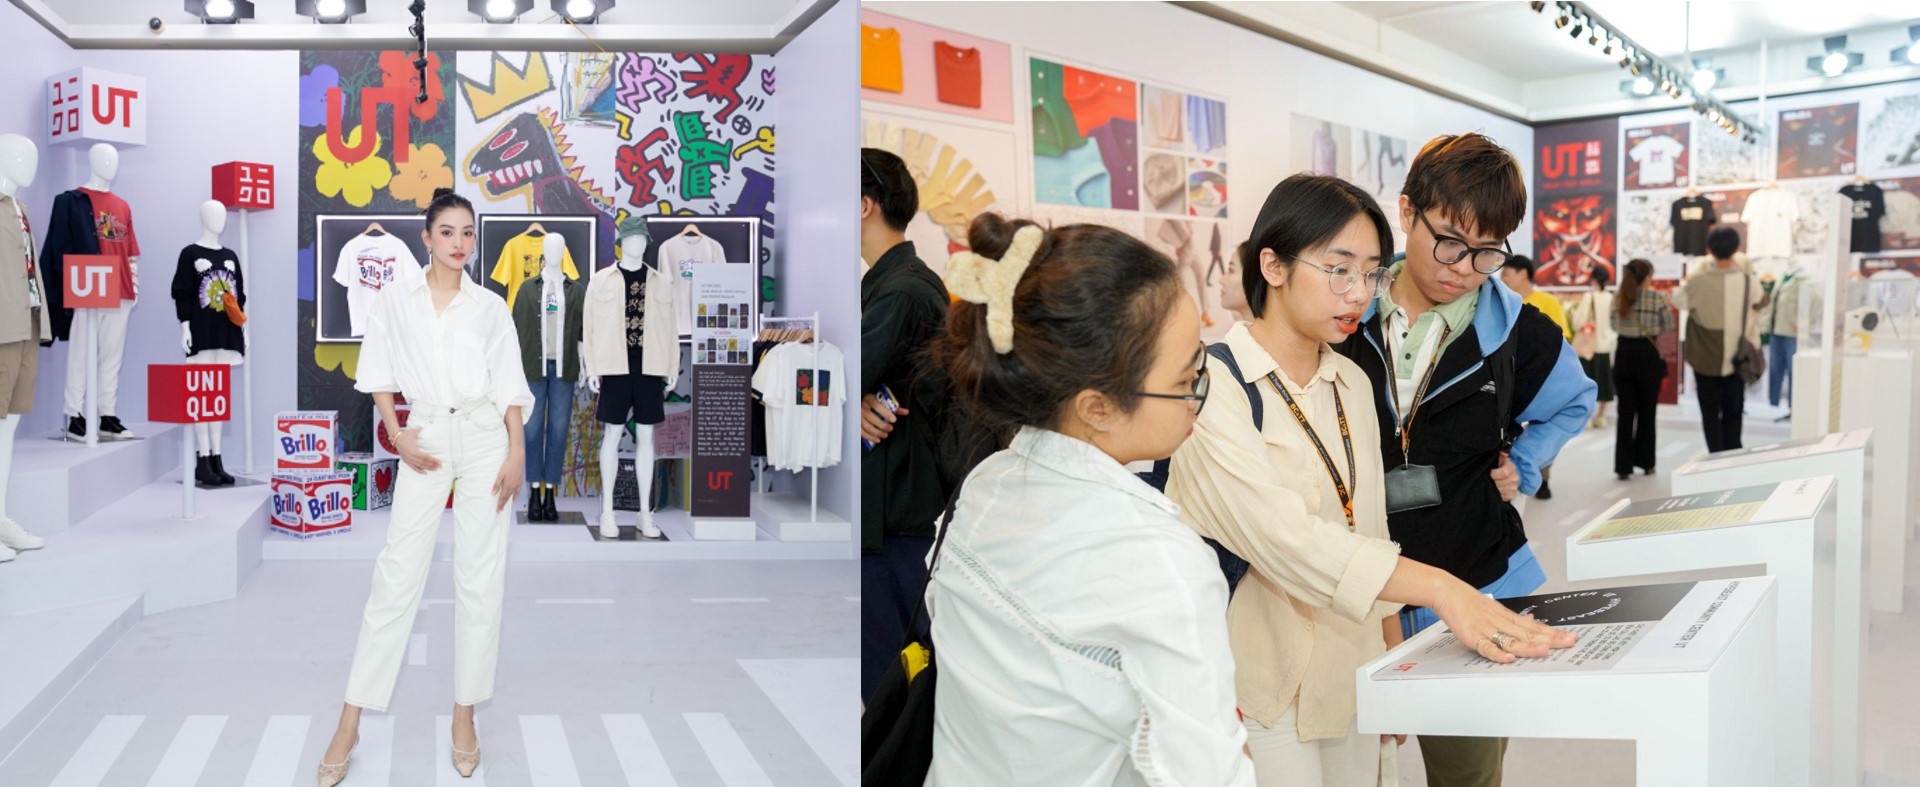  Thu hút hơn 4.500 người tham gia, không gian triển lãm nghệ thuật đầy sắc màu của UNIQLO tại TP.HCM có gì đặc biệt? - Ảnh 5.